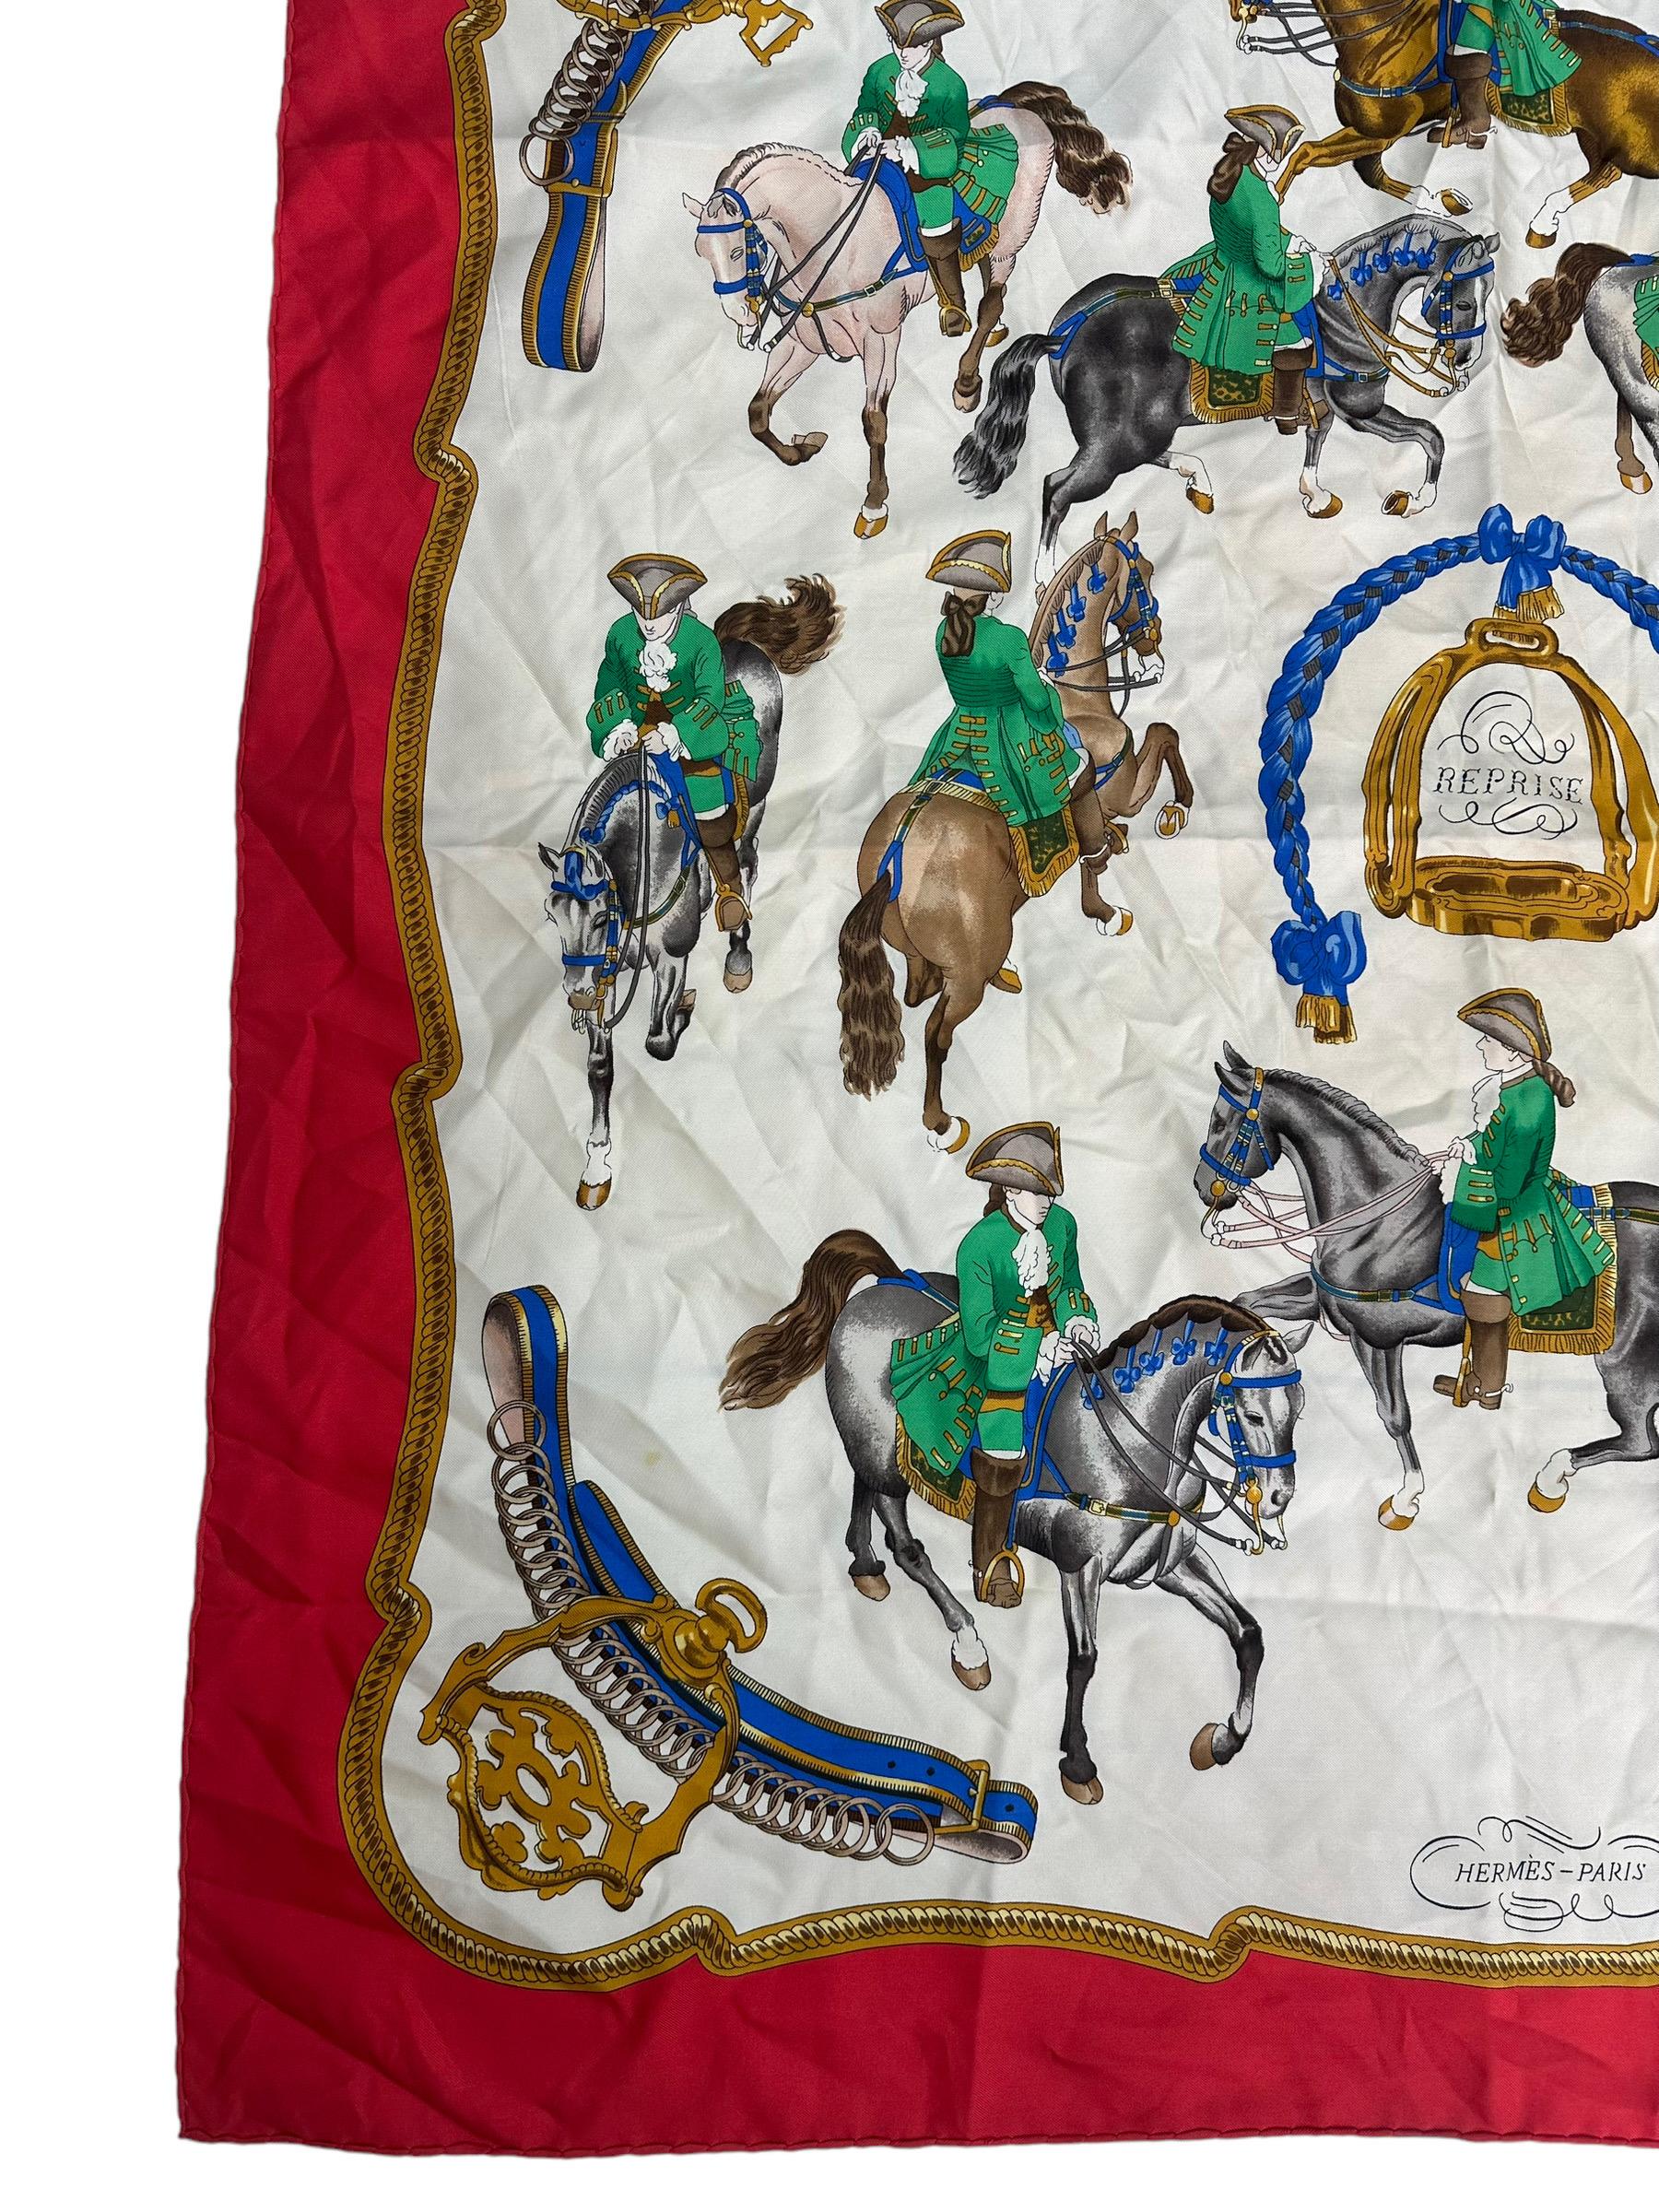 Foulard firmato Hermès, modello Reprise, realizzato in 100% seta. caratterizzato da una bordatura rossa con rappresentazioni di Napoleone a cavallo. Misura quadrata 90×90 centimetri, si presenta in buone condizioni. Da utilizzare come accessorio o